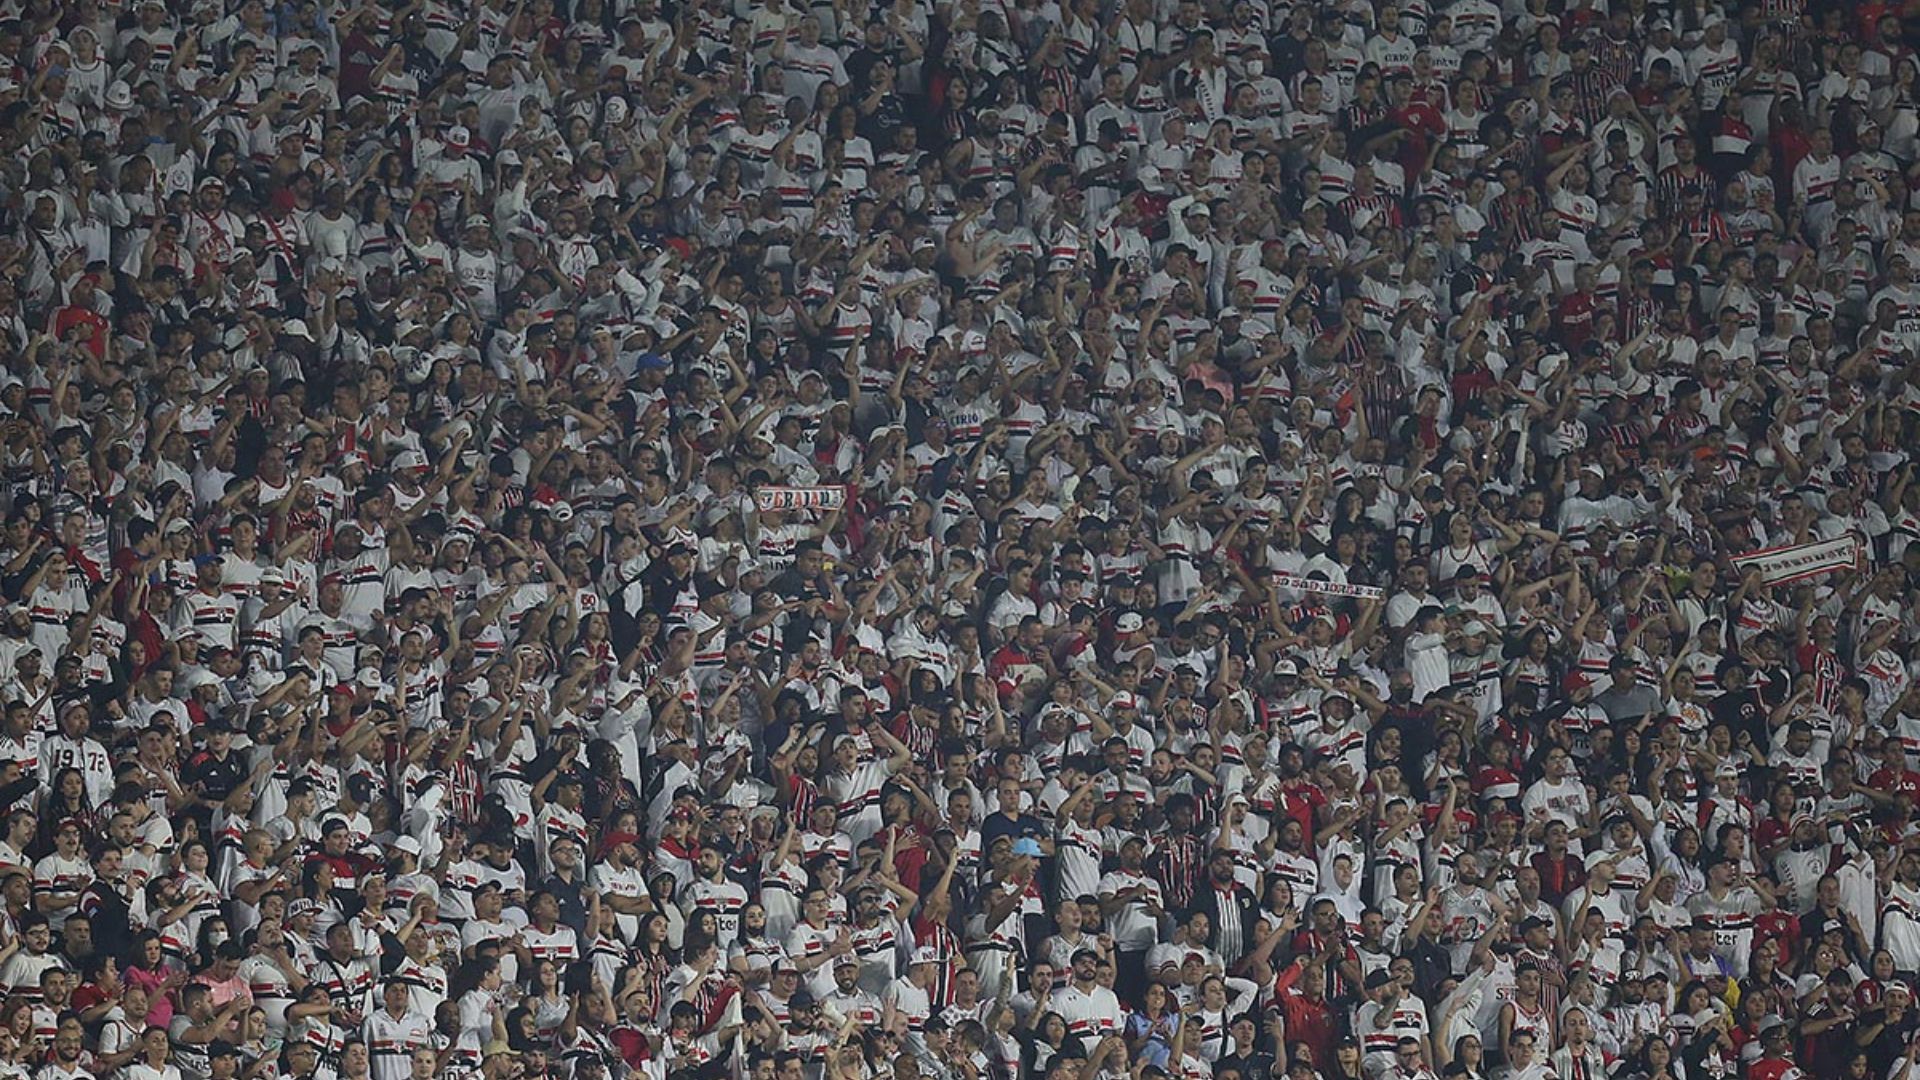 Torcida do São Paulo no estádio do Morumbi